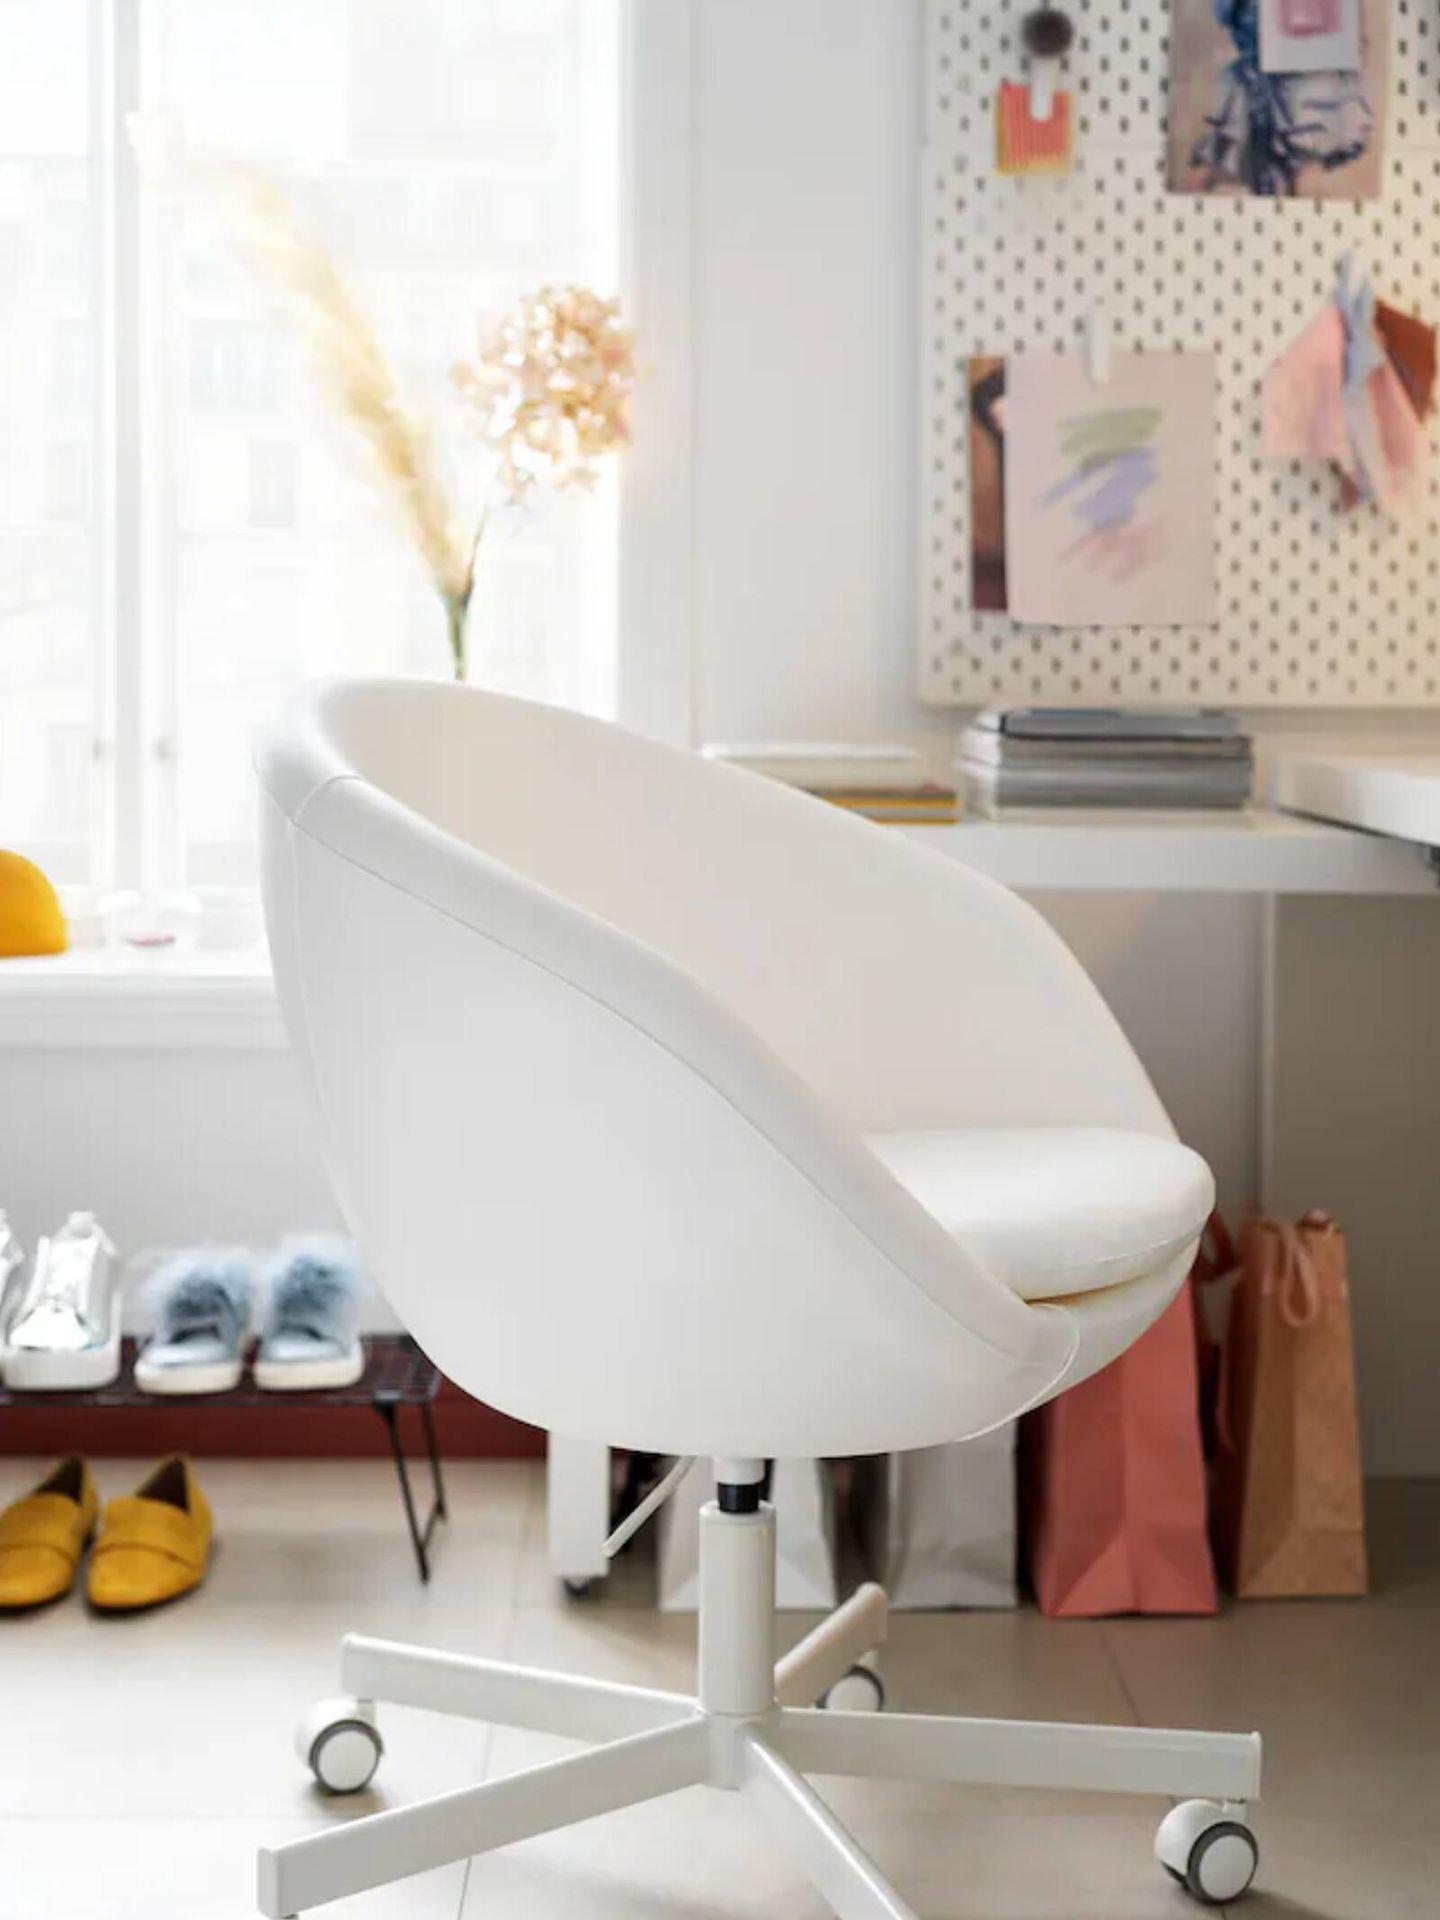 Cómodas y prácticas: así son las sillas de escritorio Ikea más